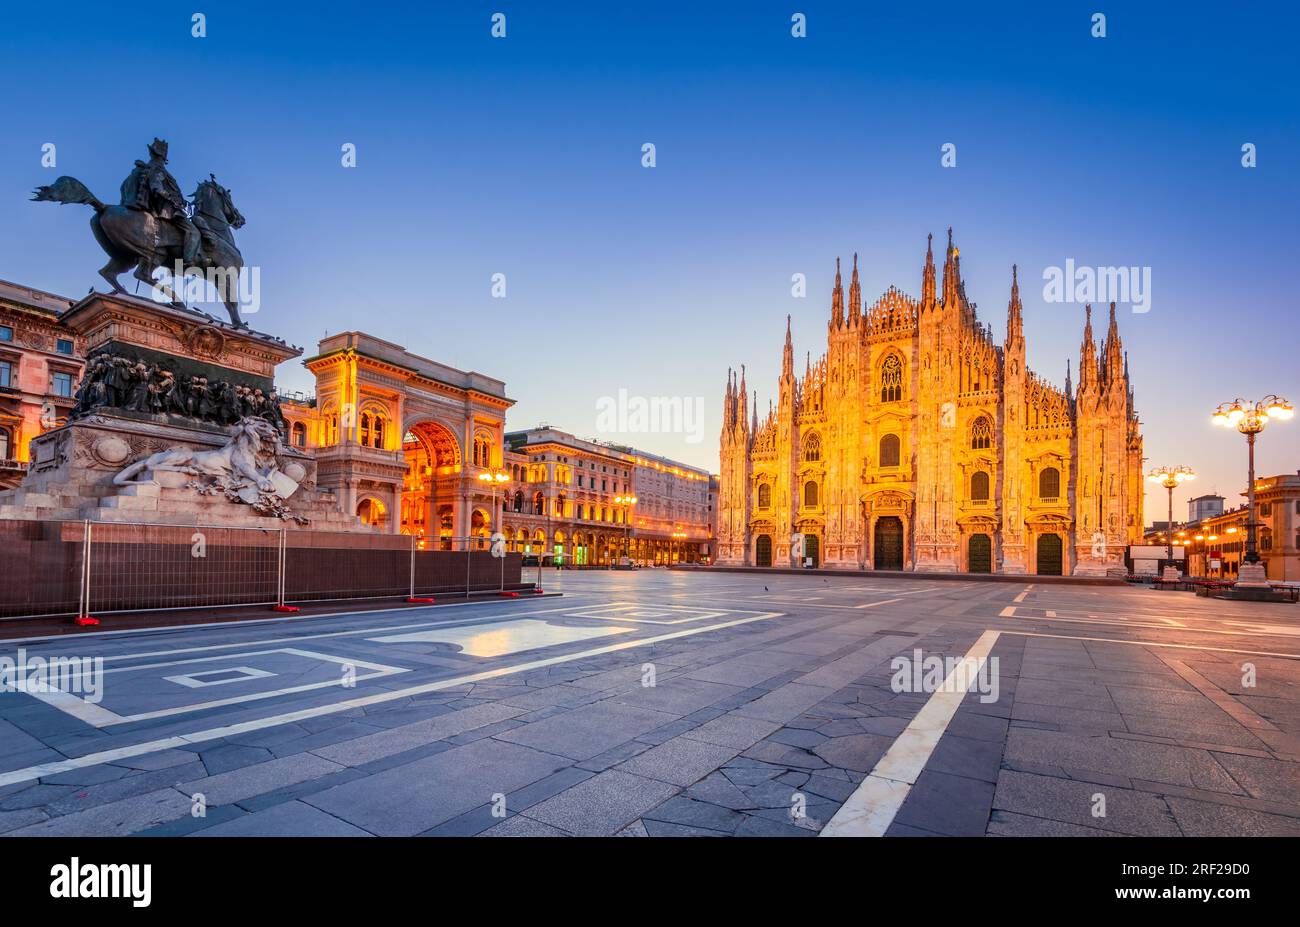 Mailand, Italien - Kathedrale Duomo di Milano und Vittorio Emanuele Galerie auf dem Platz Piazza Duomo, Morgendämmerung beleuchtet. Stockfoto